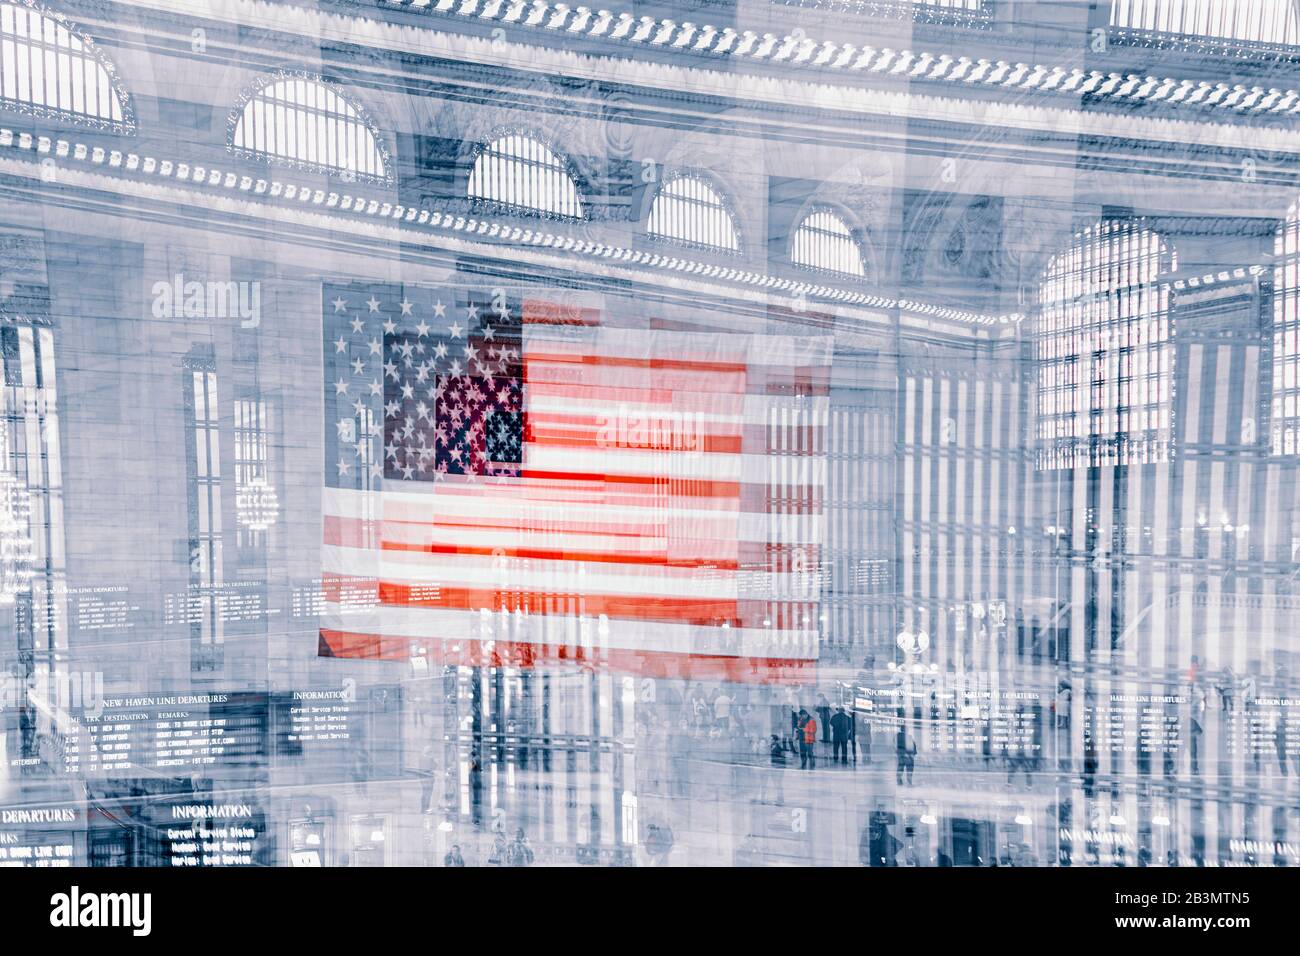 Bandiera Americana Nel Concourse Principale Al Grand Central Terminal, New York City, New York State, Stati Uniti D'America. Il Terminal, aperto nel 1913, è Foto Stock